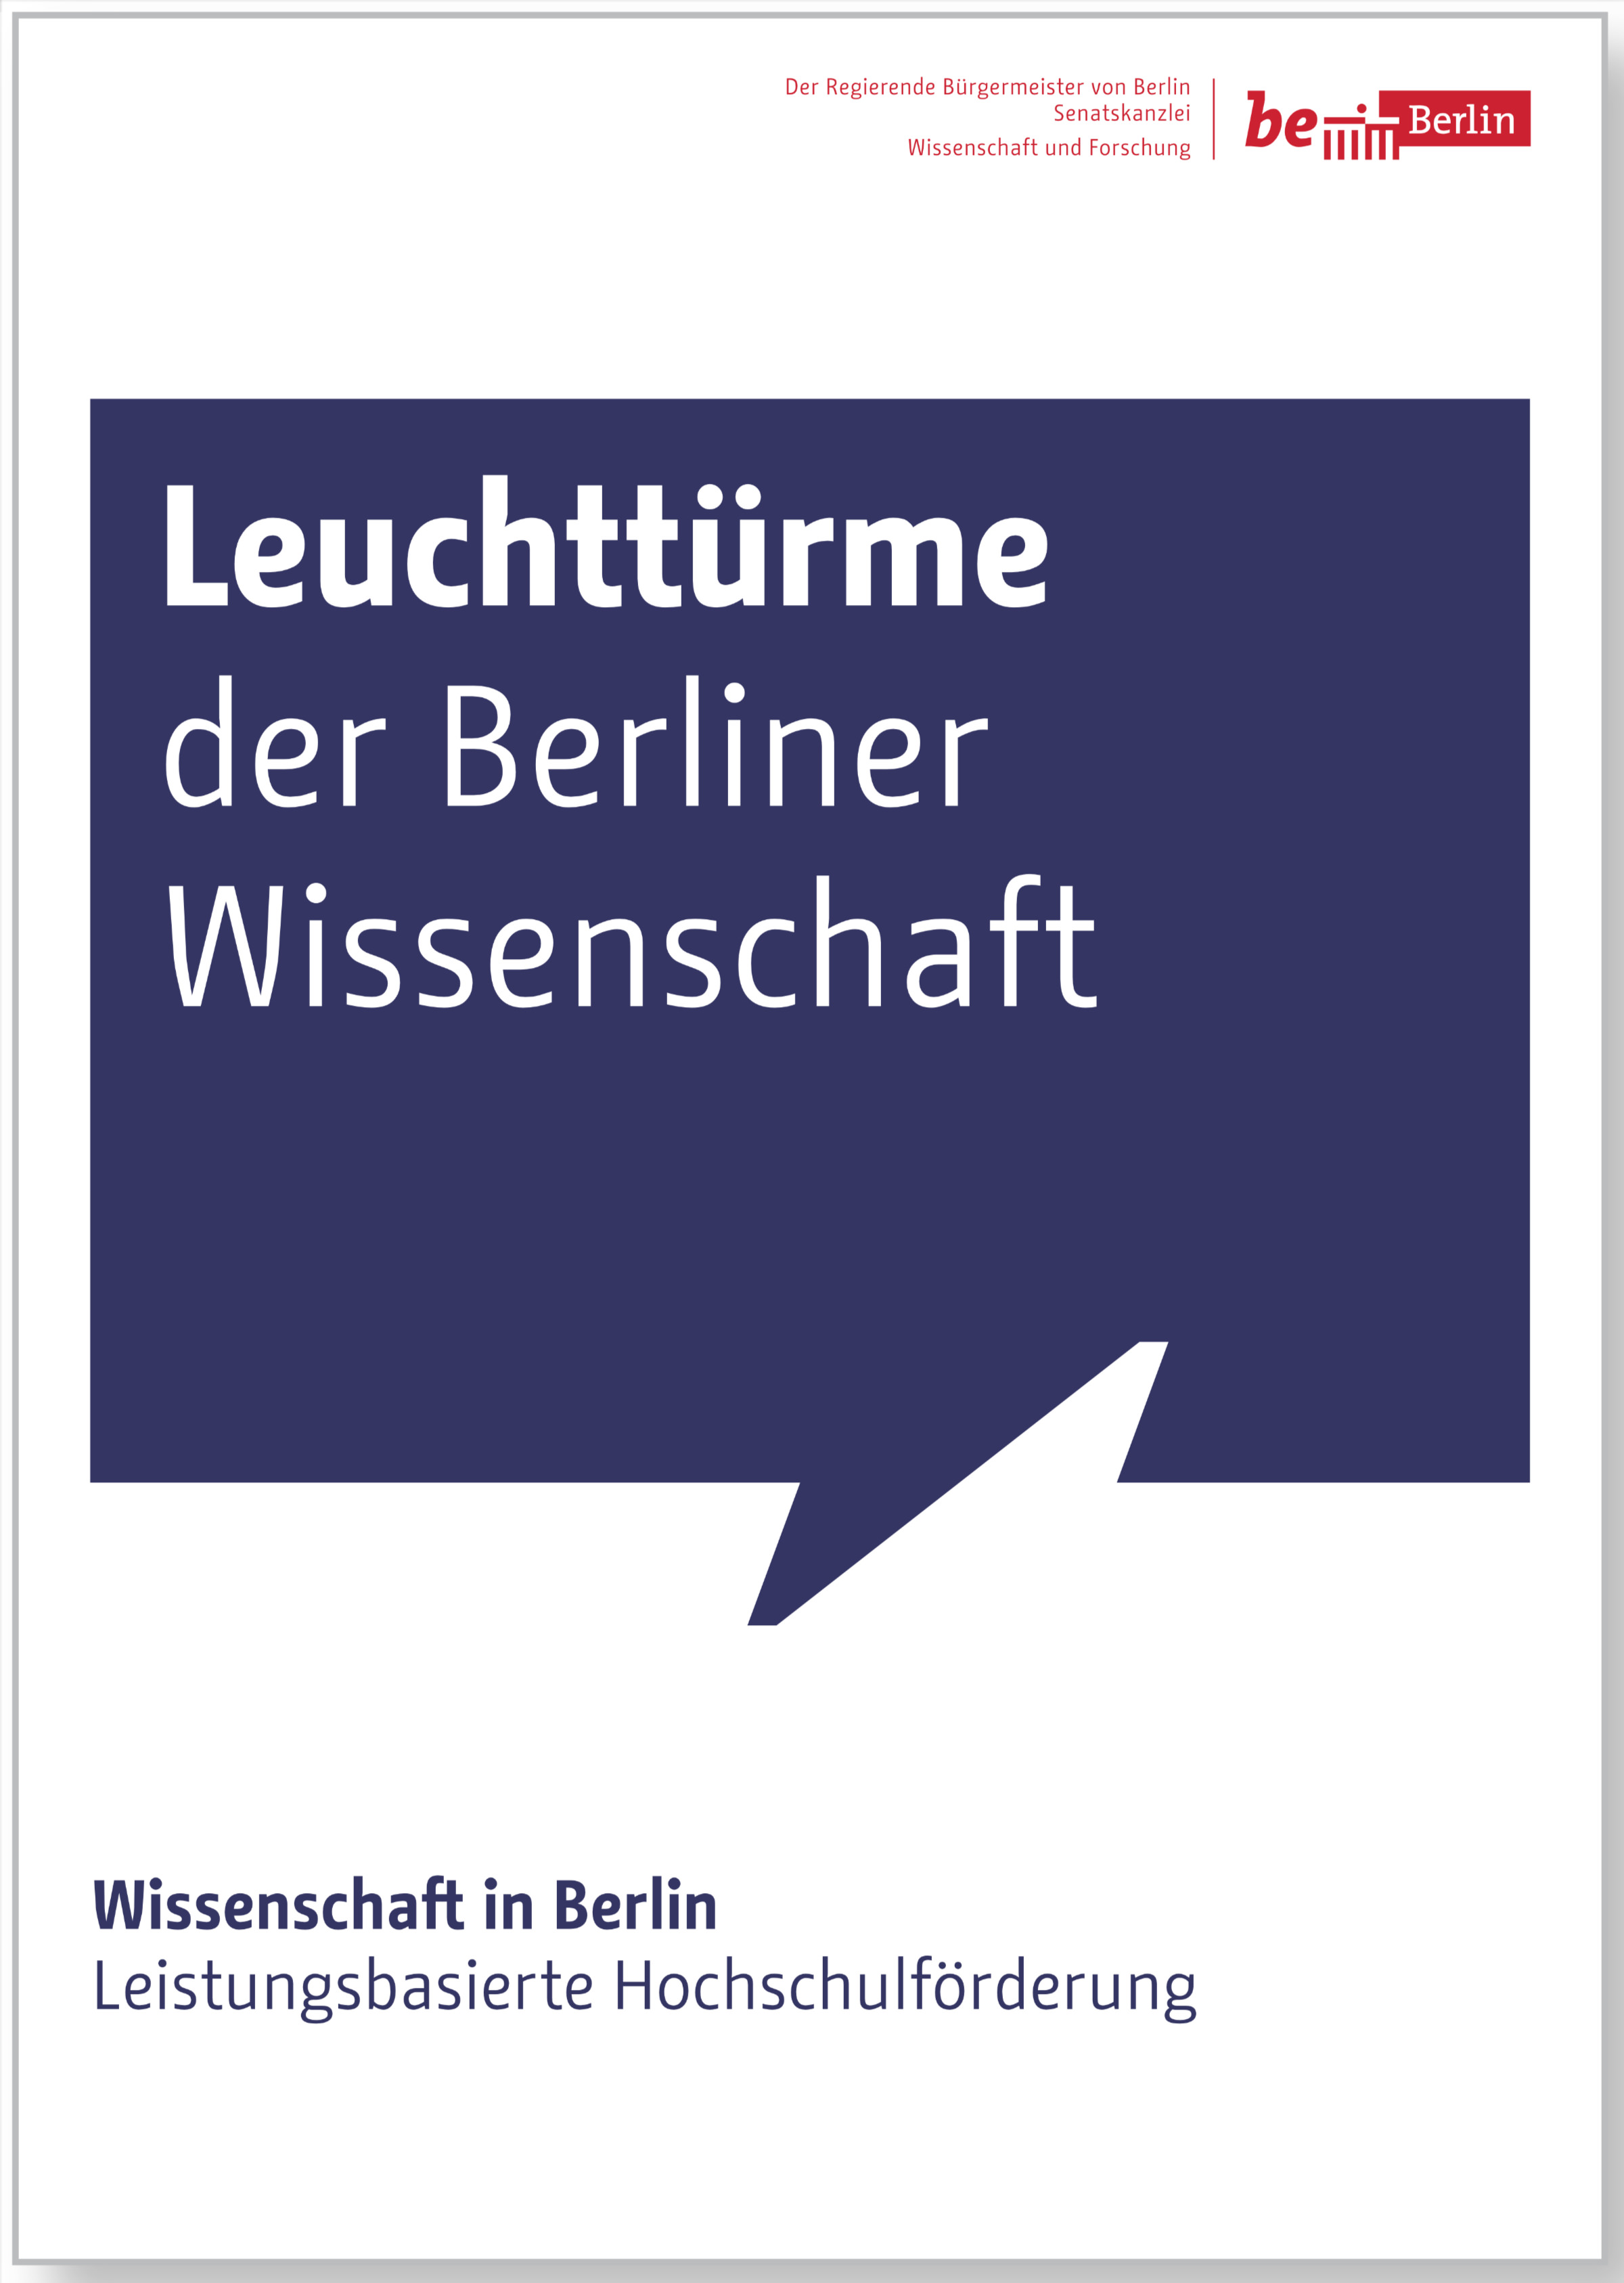 Das Titelblatt eines von zahllosen Broschüren, die in den vergangenen Jahren vom Berliner Senat herausgegeben wurden.